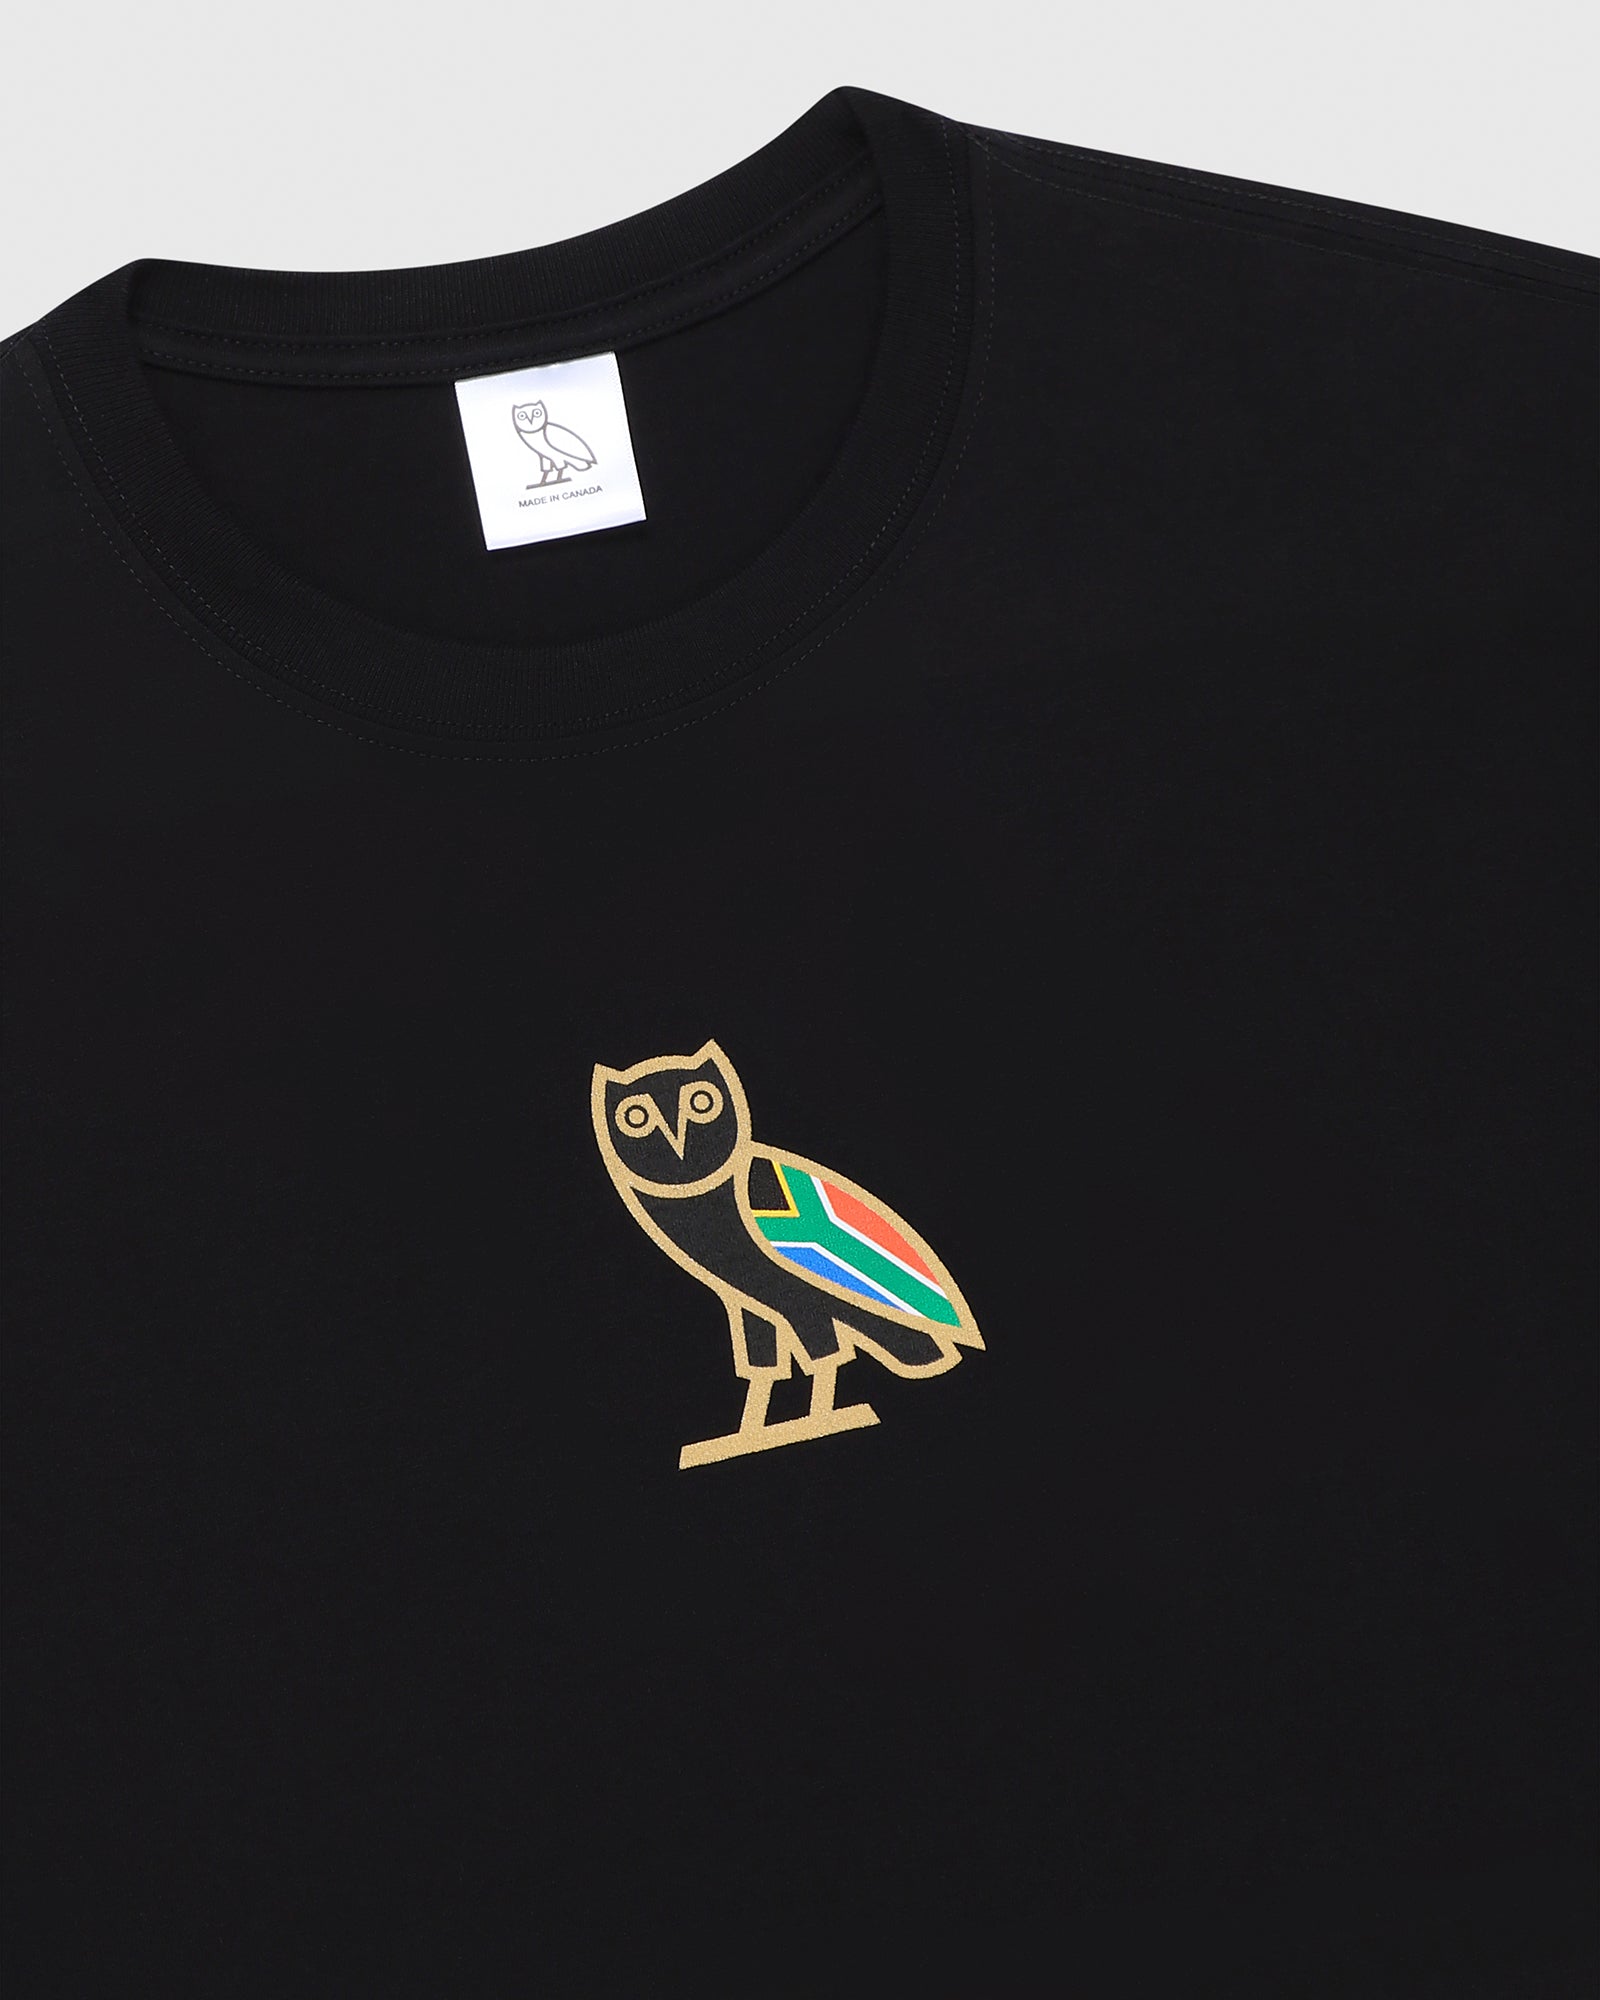 International Mini OG T-Shirt - South Africa Black